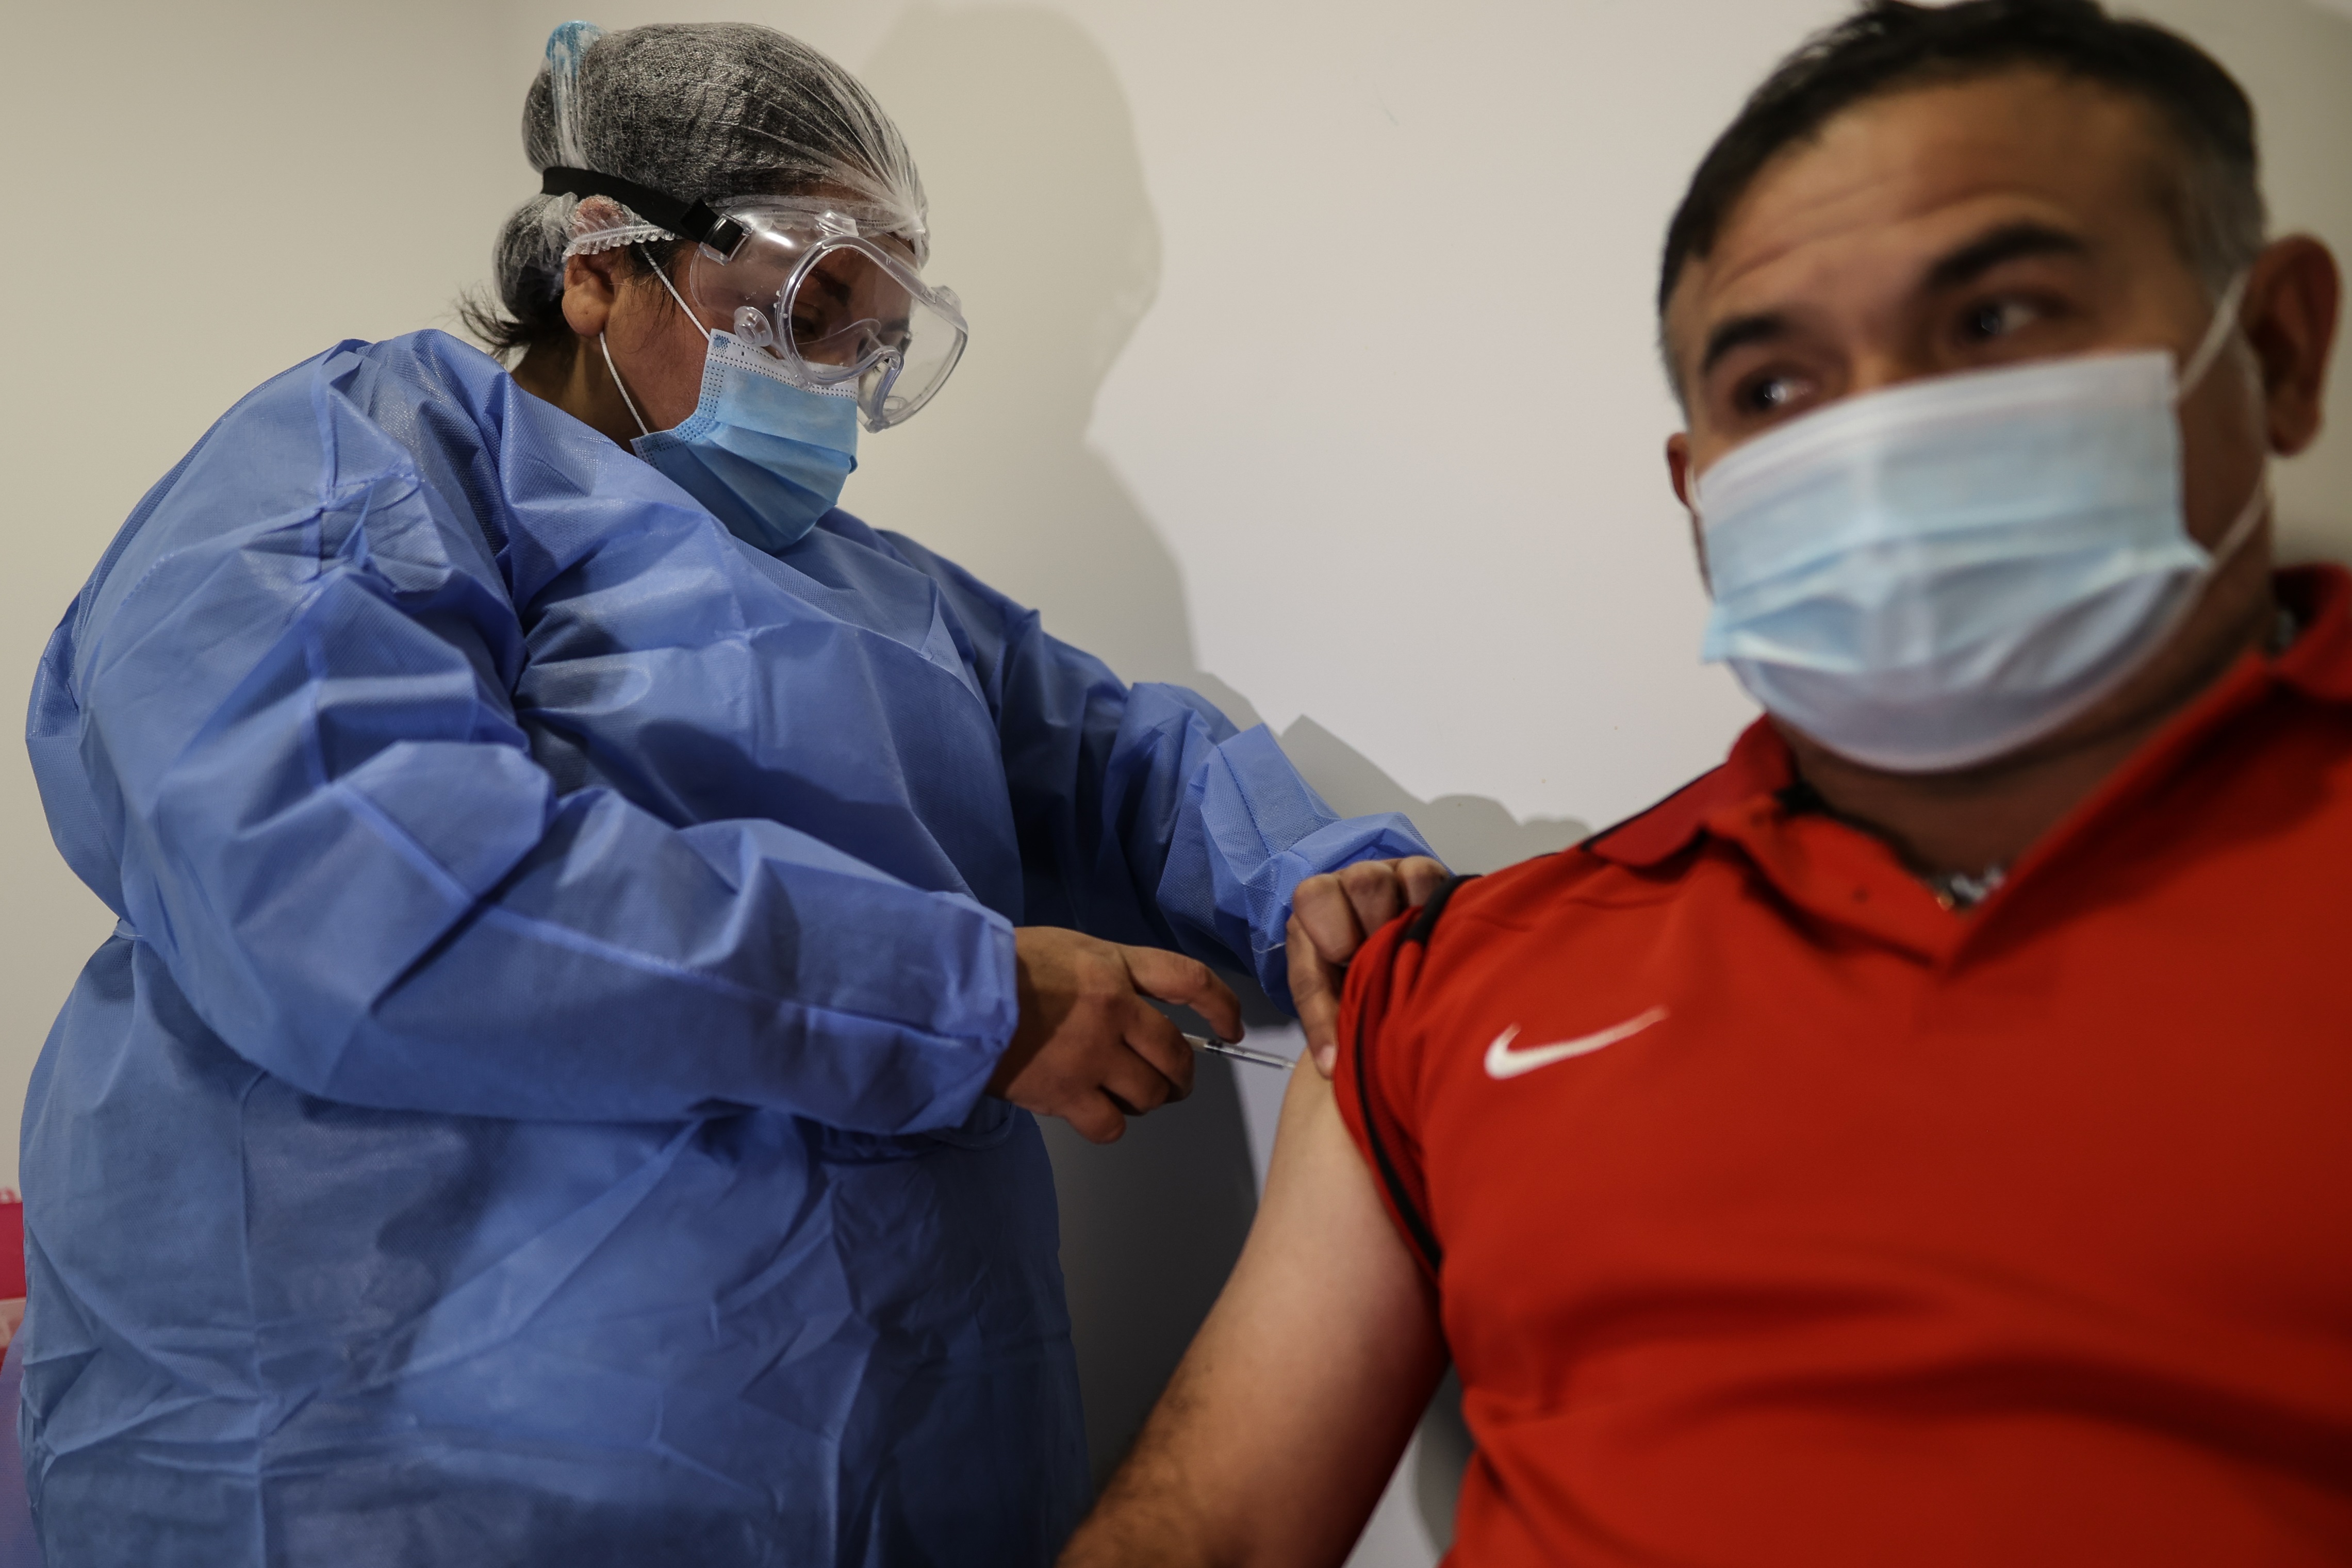 Las provincias buscan motivar la vacunación contra el COVID (EFE/Juan Ignacio Roncoroni)
